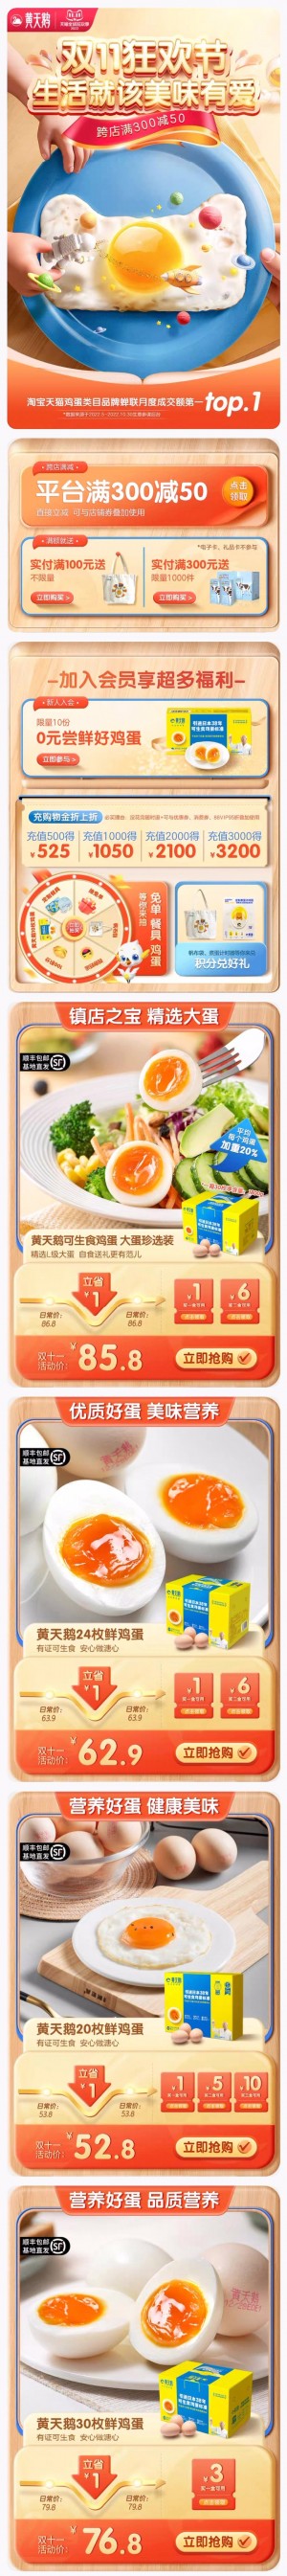 天猫首页黄天鹅 食品 零食 双11预售 双十一来啦 手机端 M端活动首页设计